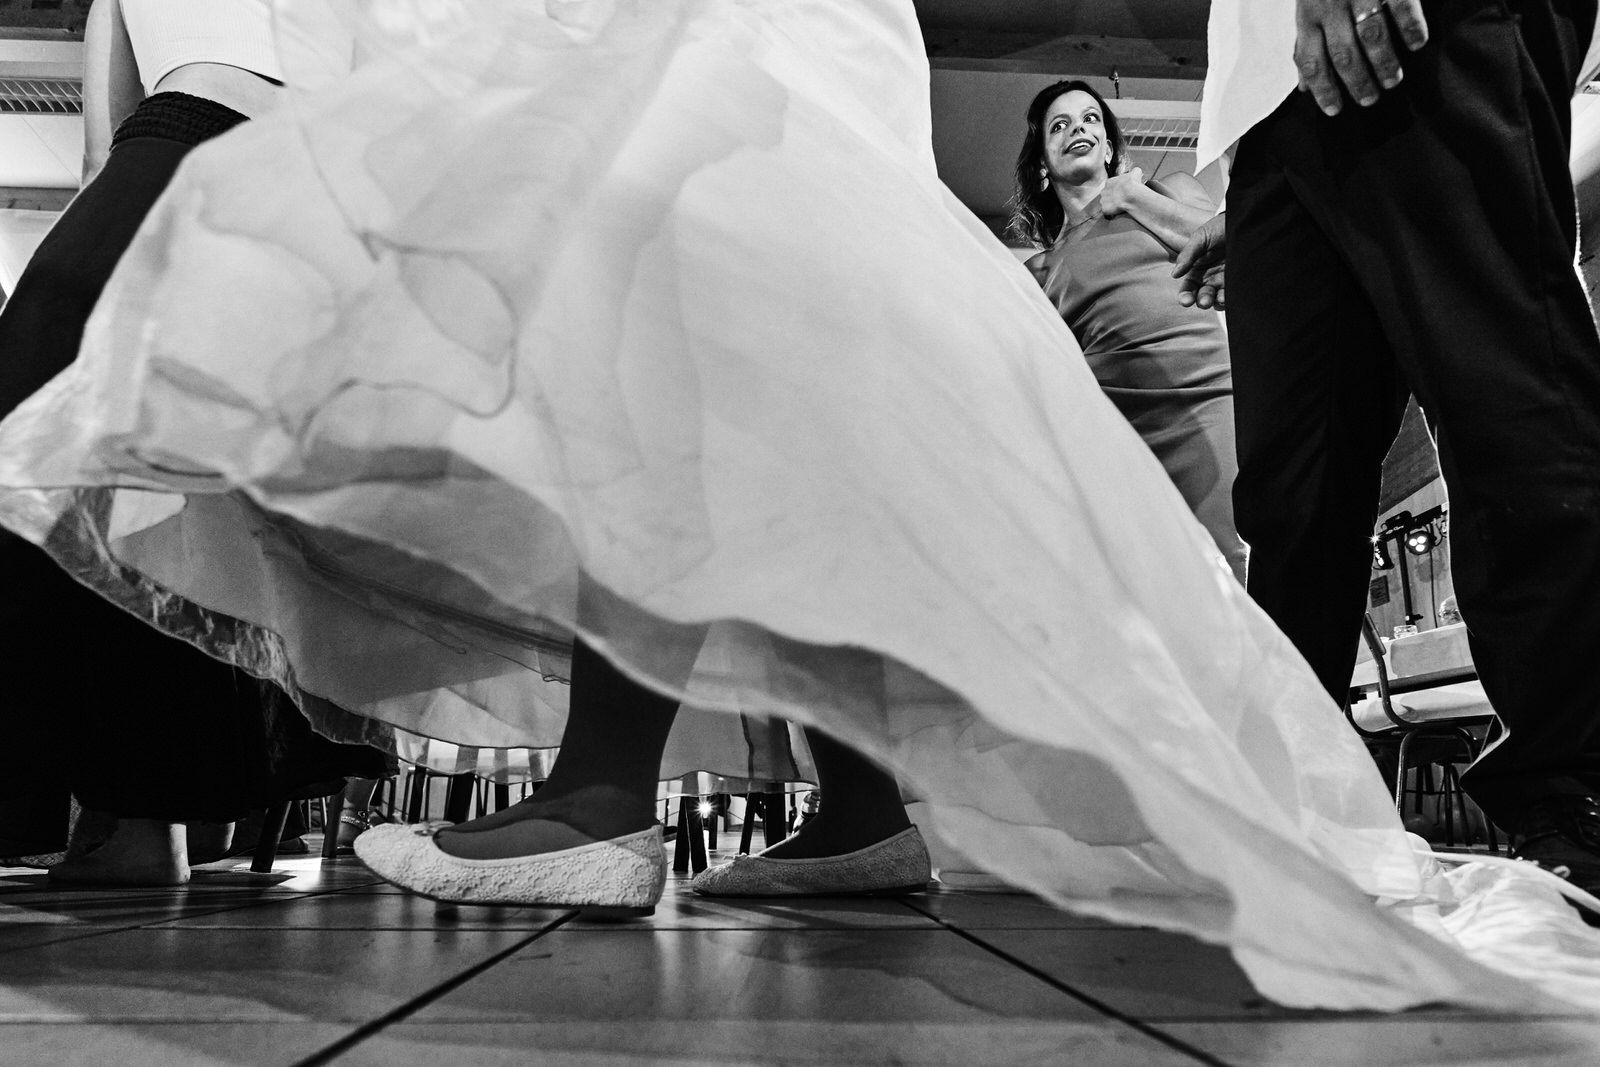 gros plan sur la robe de la mariée pendant le jeu des chaises musicales